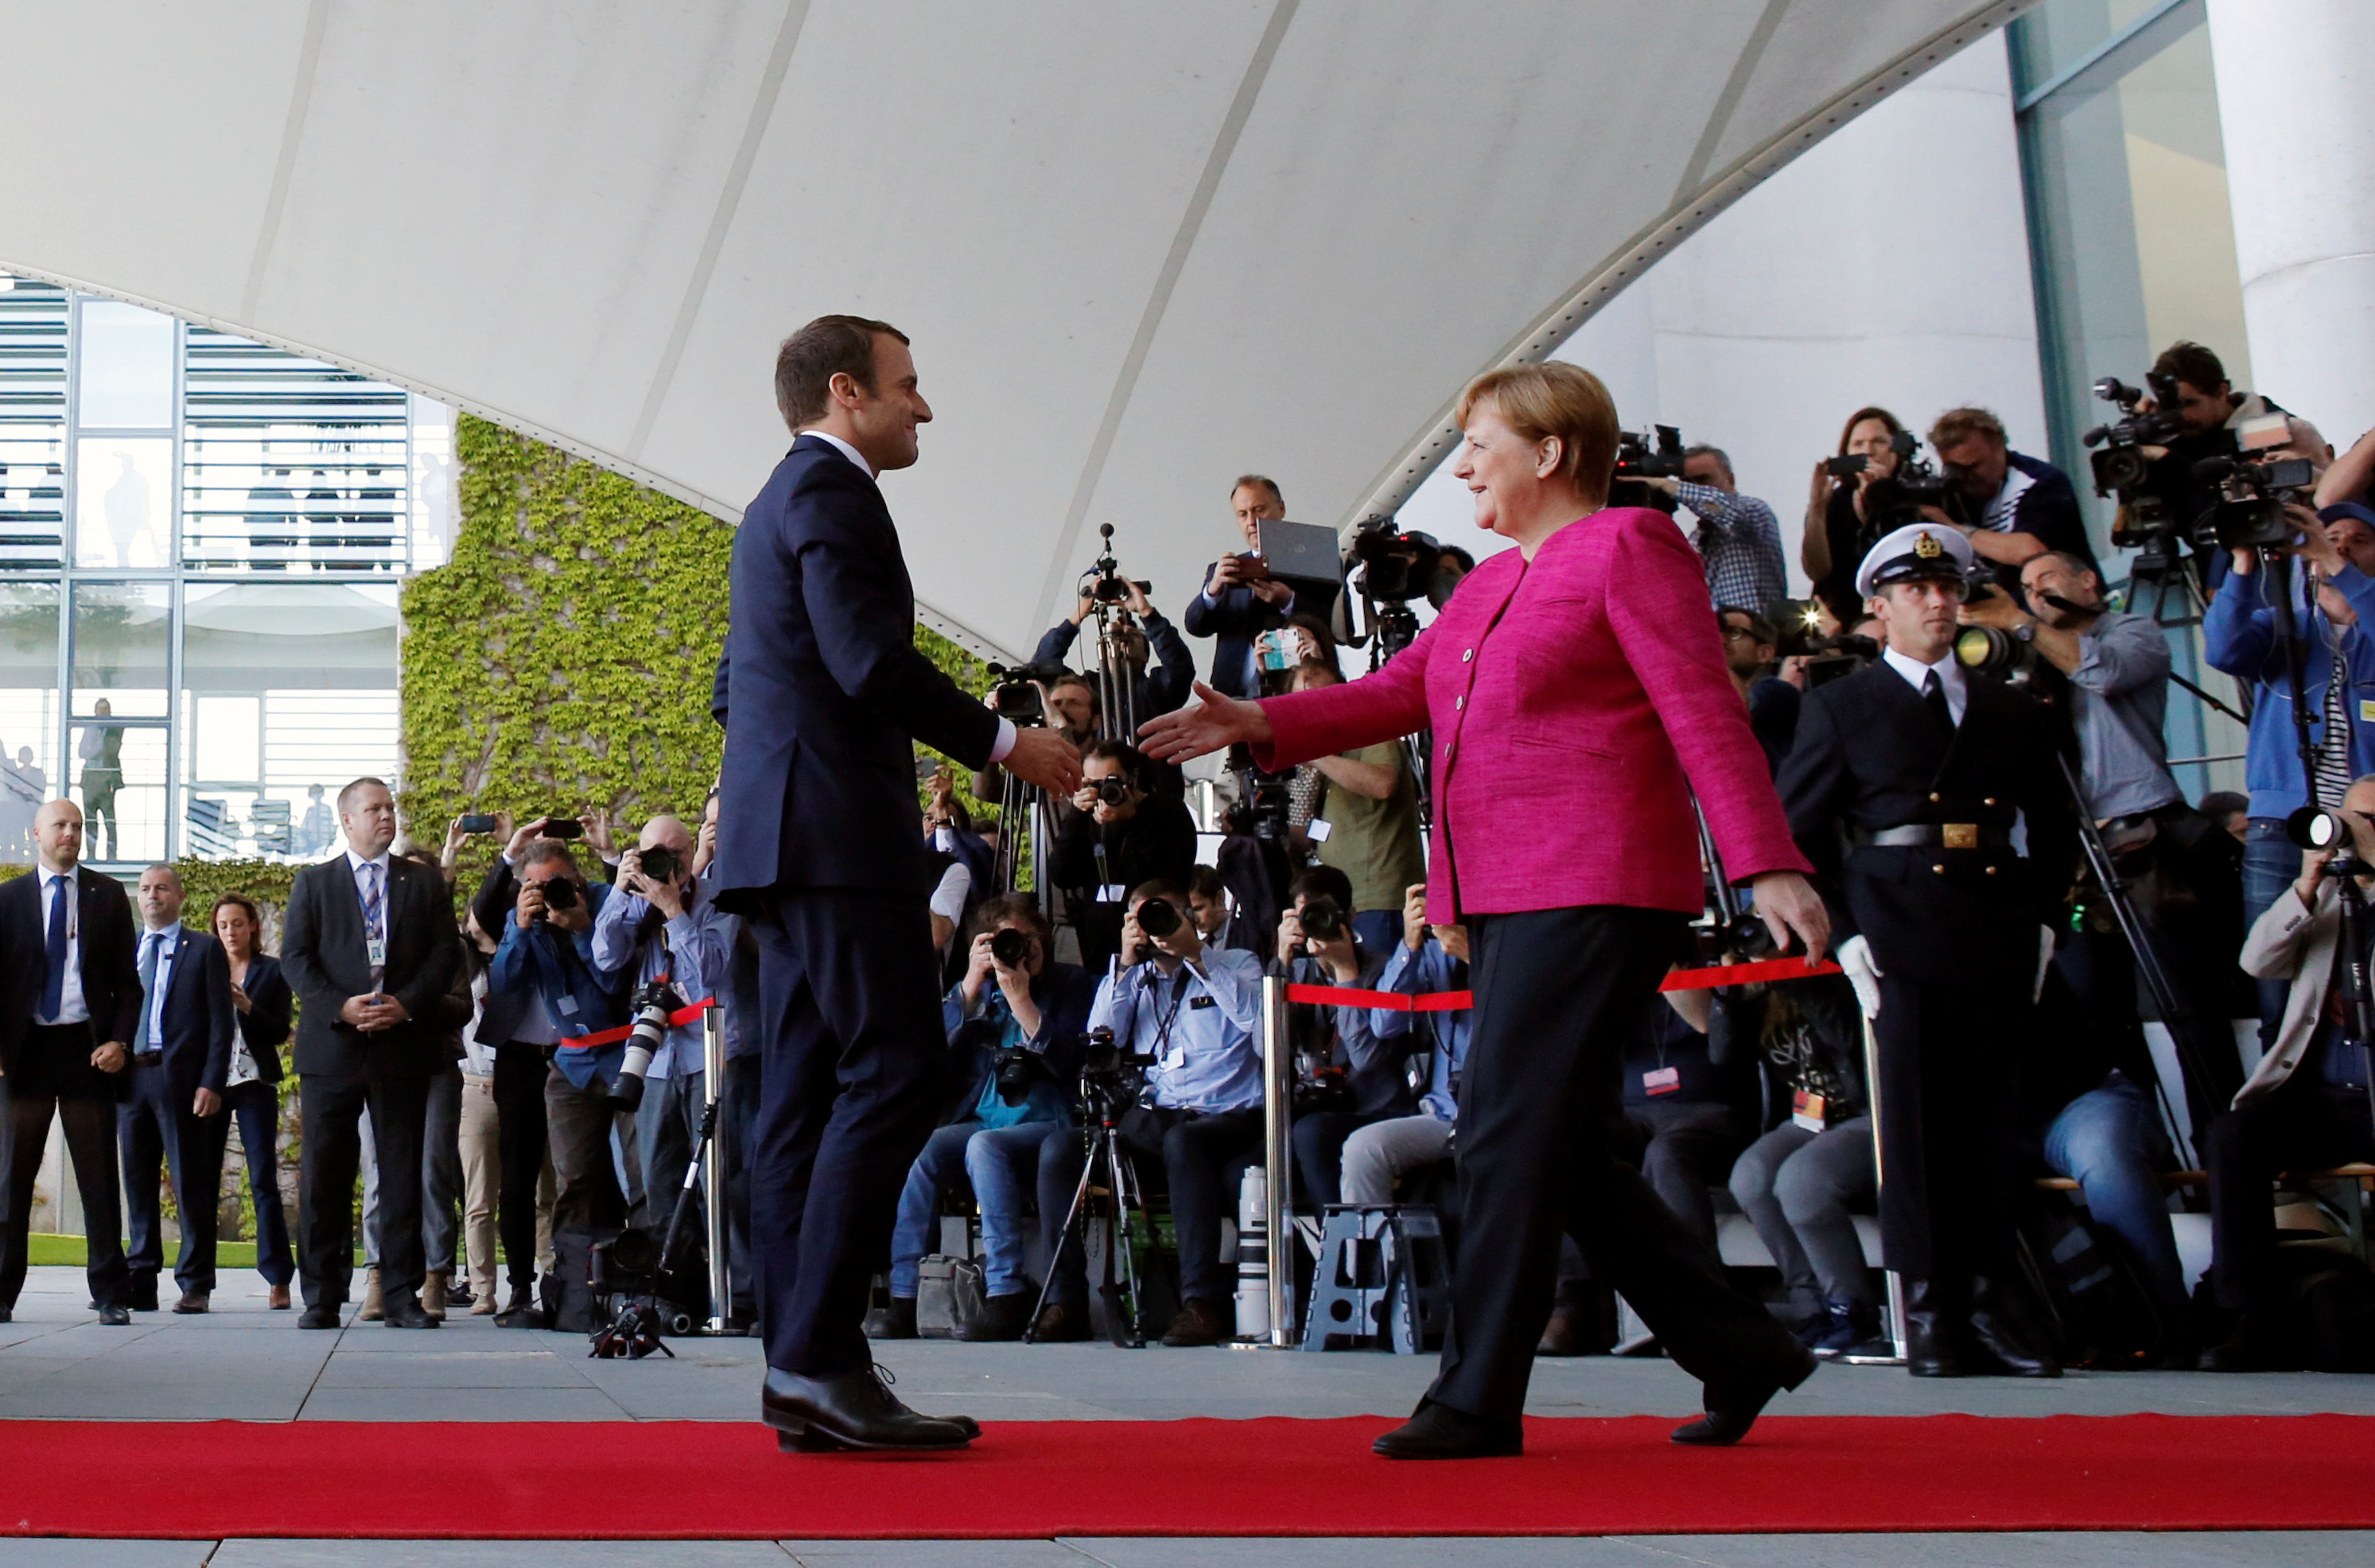 المستشارة الألمانية أنجيلا ميركل تصافح الرئيس الفرنسي إيمانويل ماكرون  لدى زيارته برلين